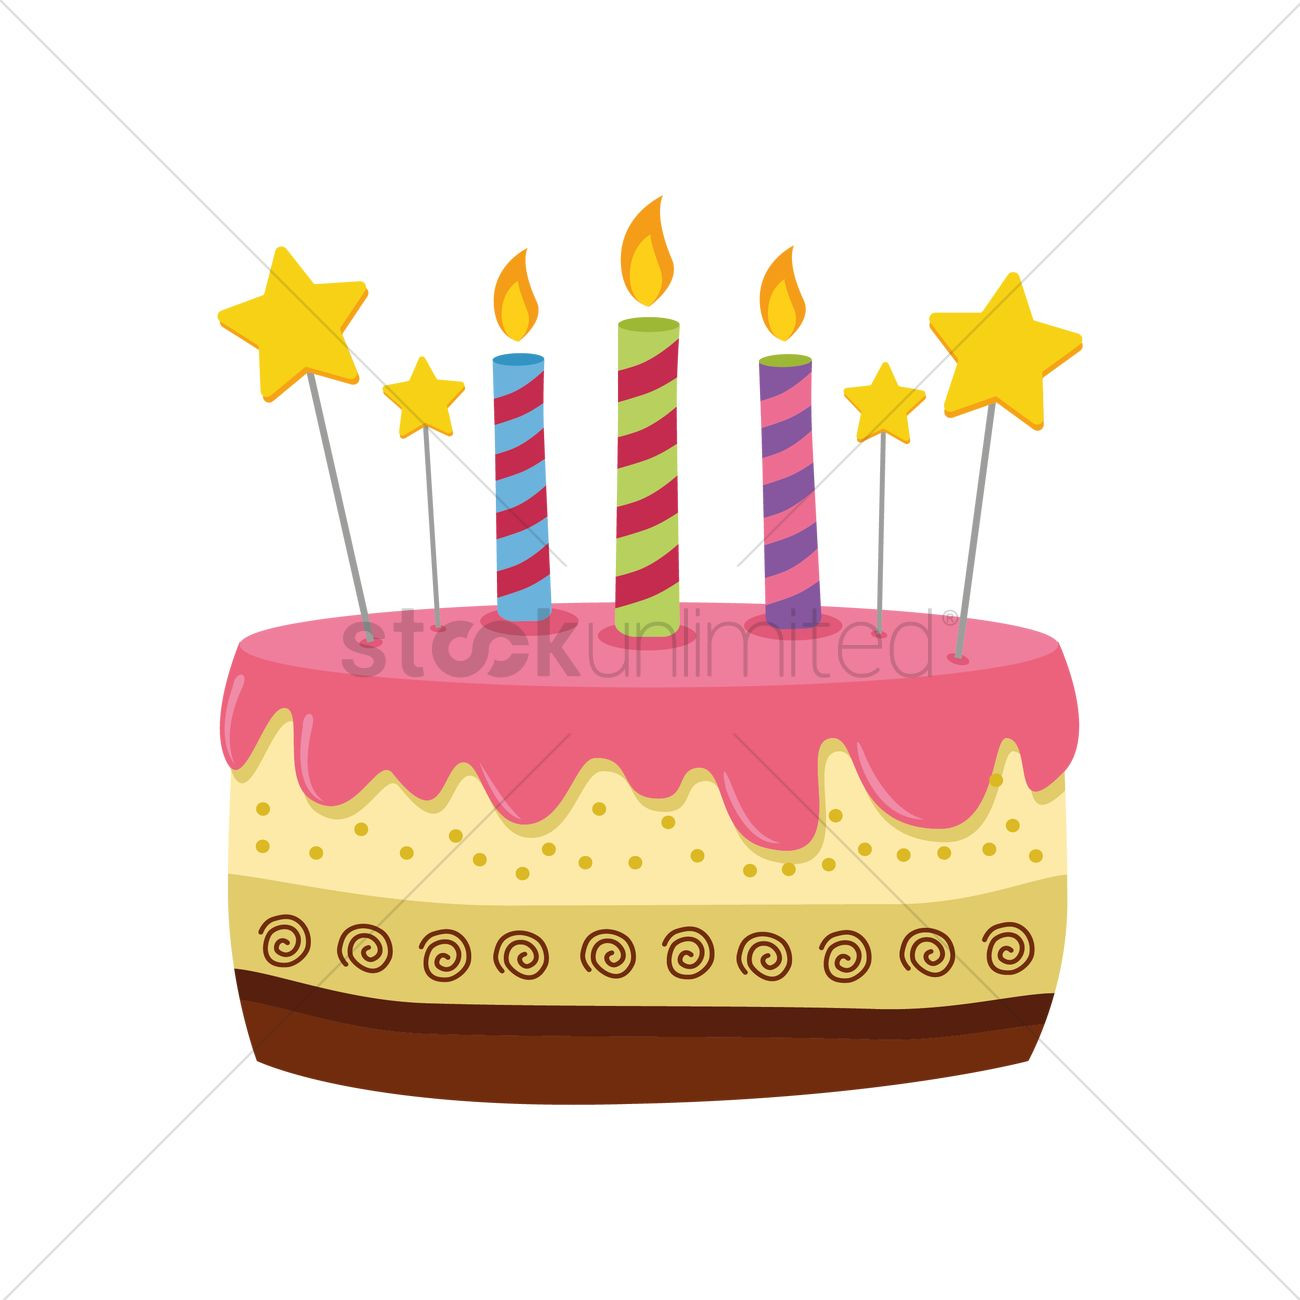 Birthday Cake Vector
 Birthday cake Vector Image